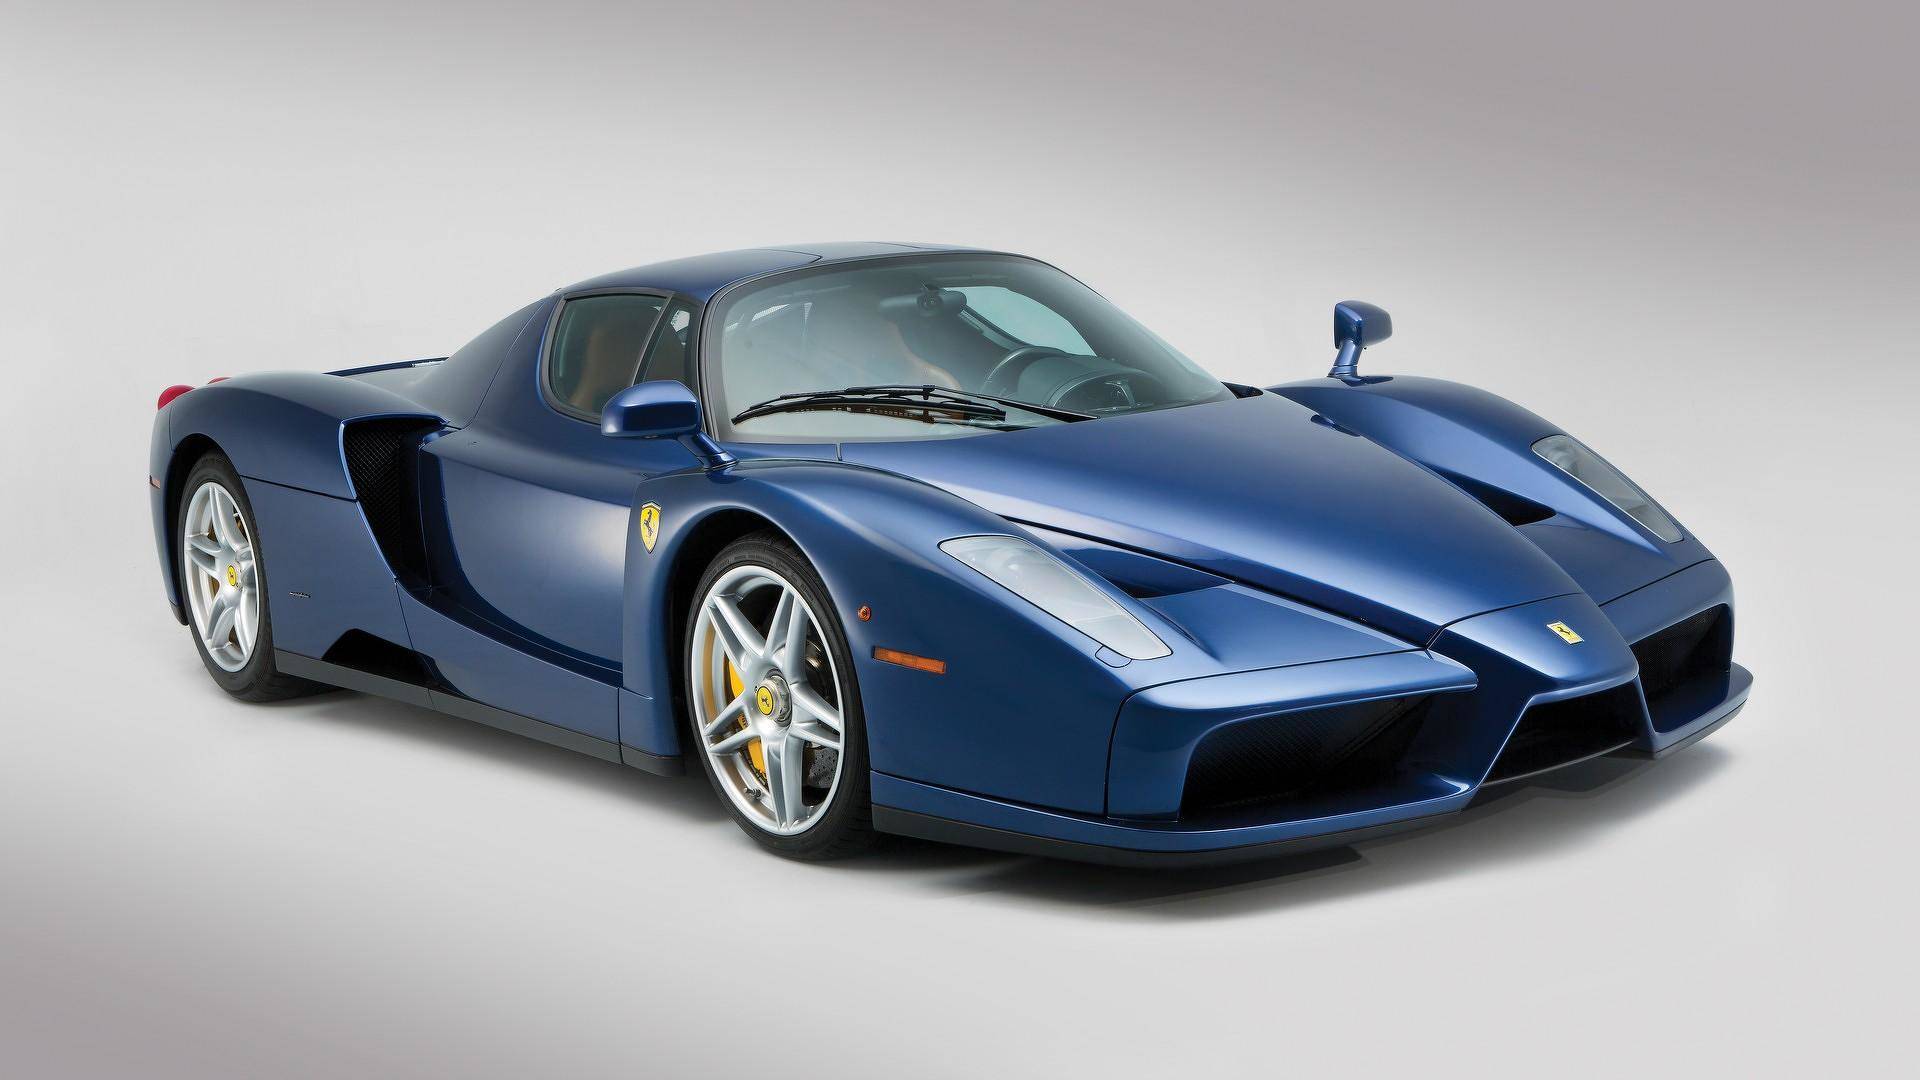 Ferrari Enzo News and Reviews | Motor1.com